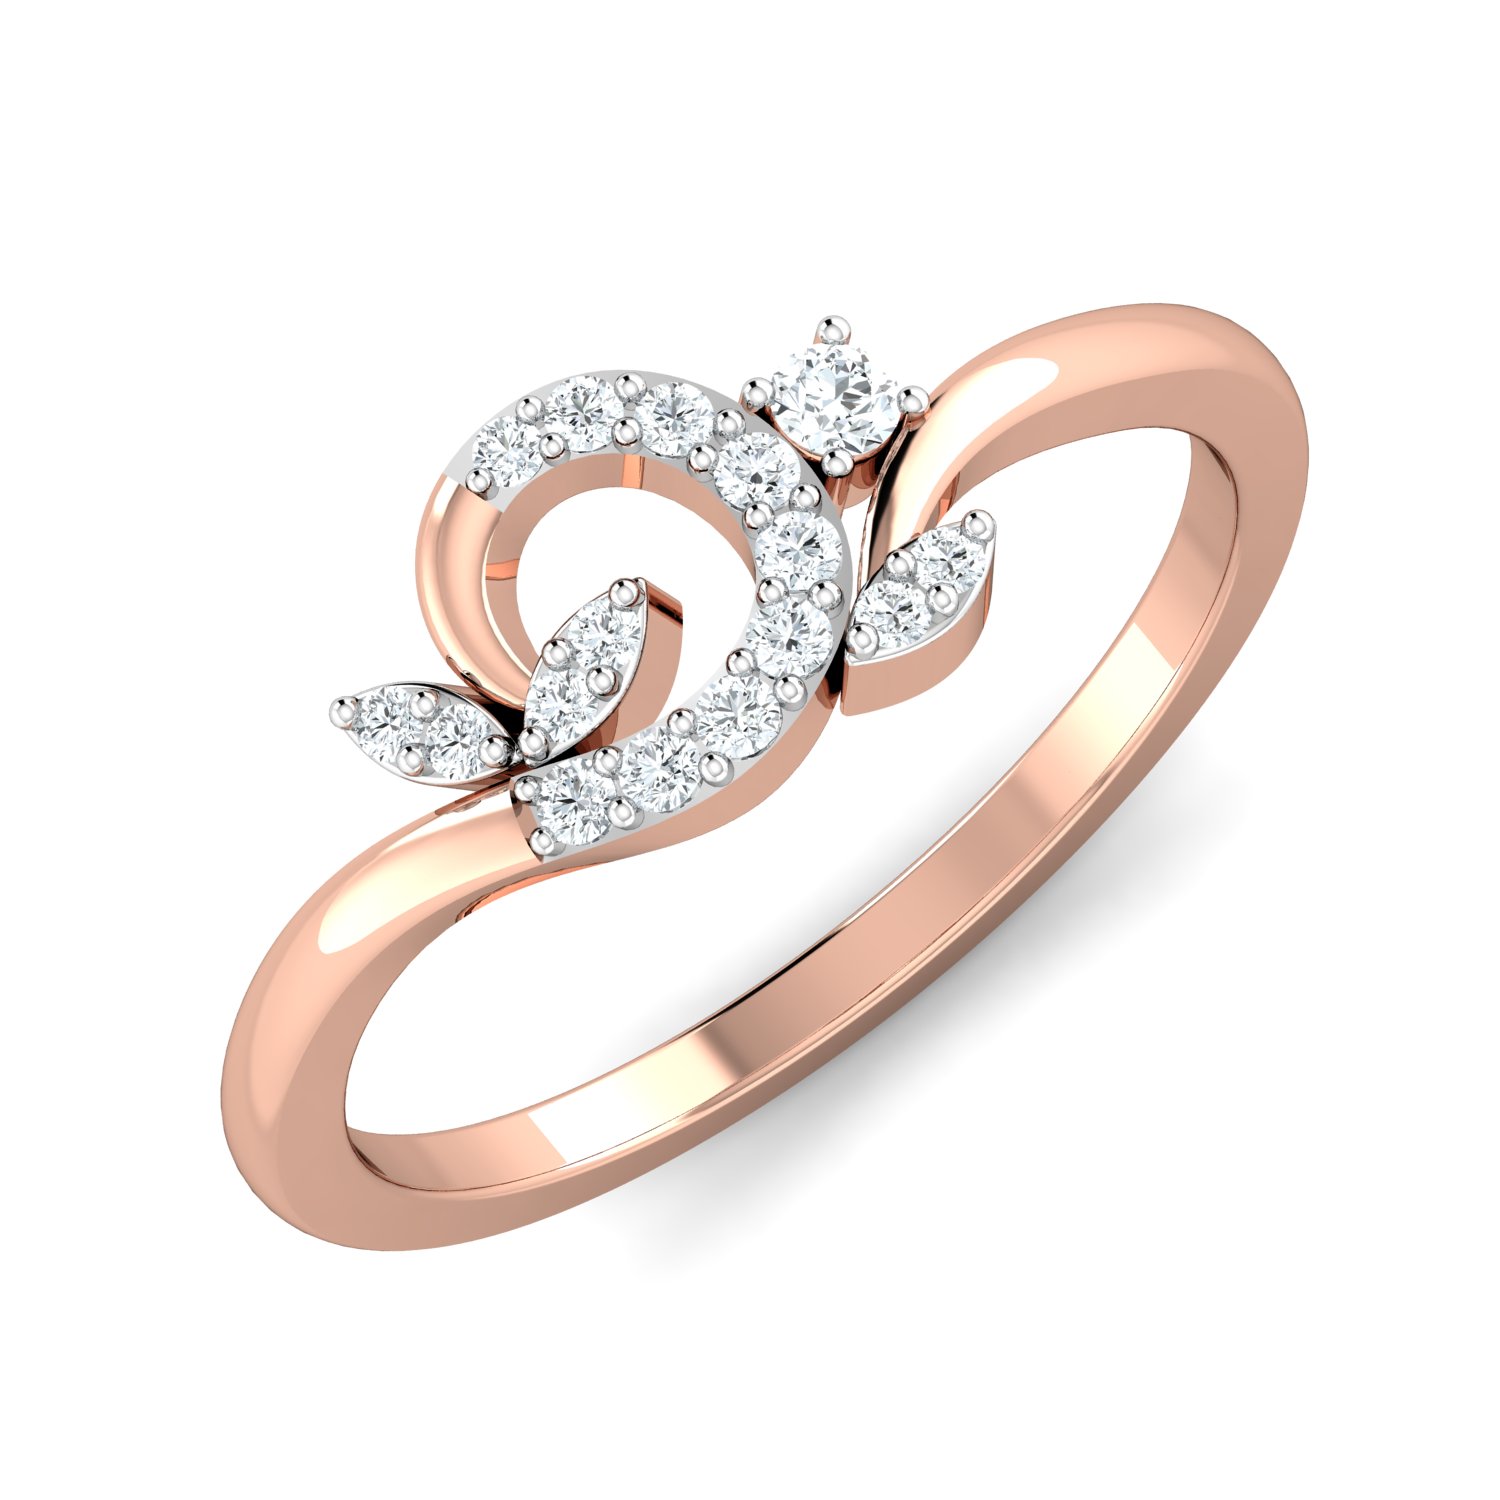 Simon G. 18kt White Gold Leaf Design Ring with Diamonds | Ross-Simons